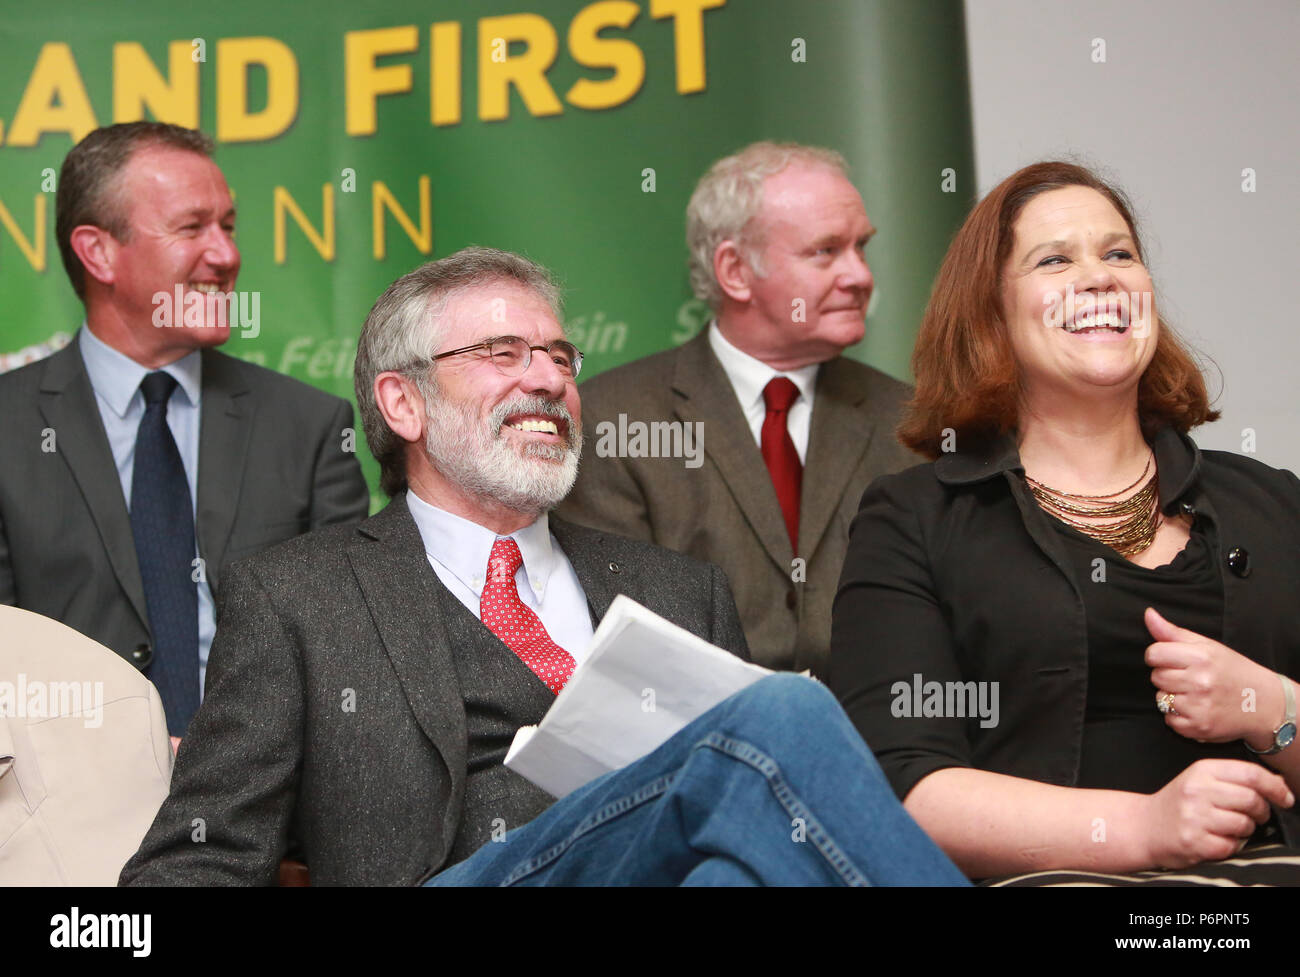 Sinn Féin Präsident Gerry Adams lacht während einer europäischen Wahl Rallye in South Belfast, Nordirland, Montag, 5. Mai 2014. Der Sinn Fein Präsident war für vier Tage im Zusammenhang mit der Ermordung von Jean McConville und der Mitgliedschaft der IRA in Frage gestellt. Auch im Bild (von links nach rechts) Conor Murphy, Martin McGuinness & Mary Lou McDonald. Stockfoto